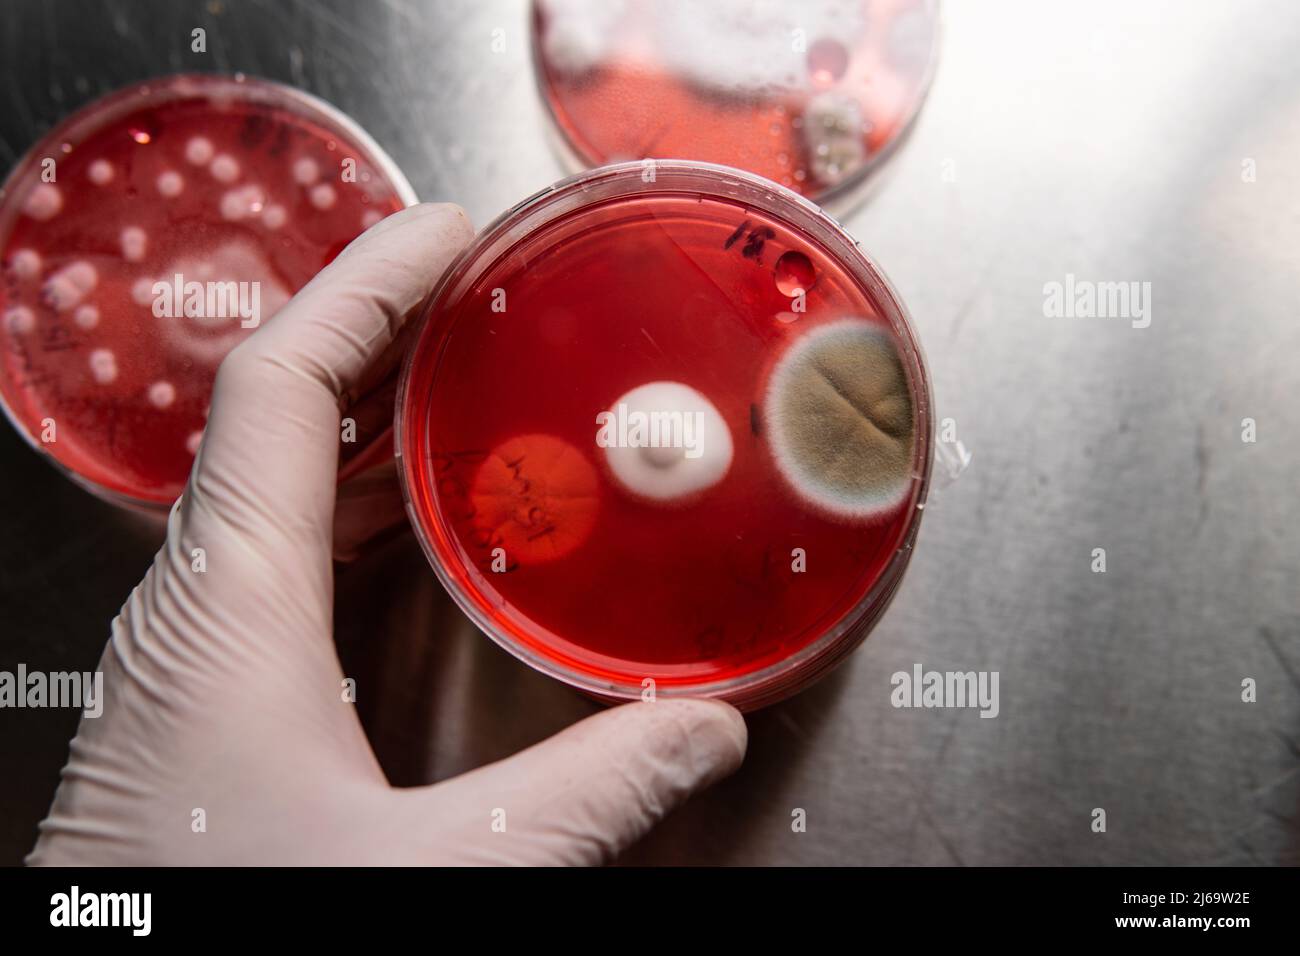 moisissures et bactéries sur gélose rouge. Milieu de gélose pour agents pathogènes. Moule s Banque D'Images